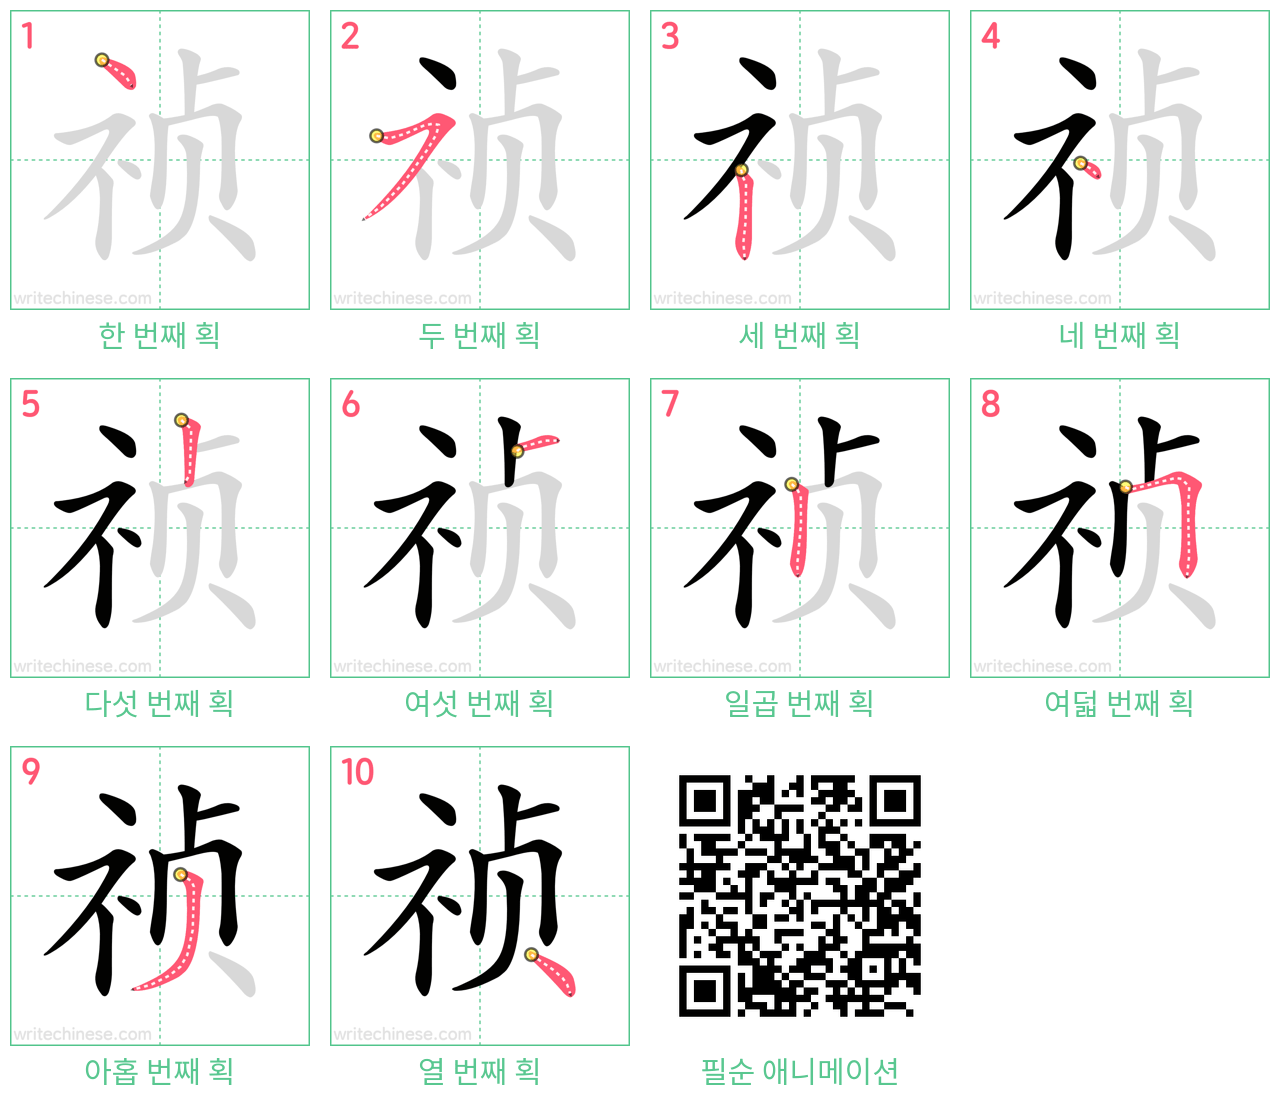 祯 step-by-step stroke order diagrams